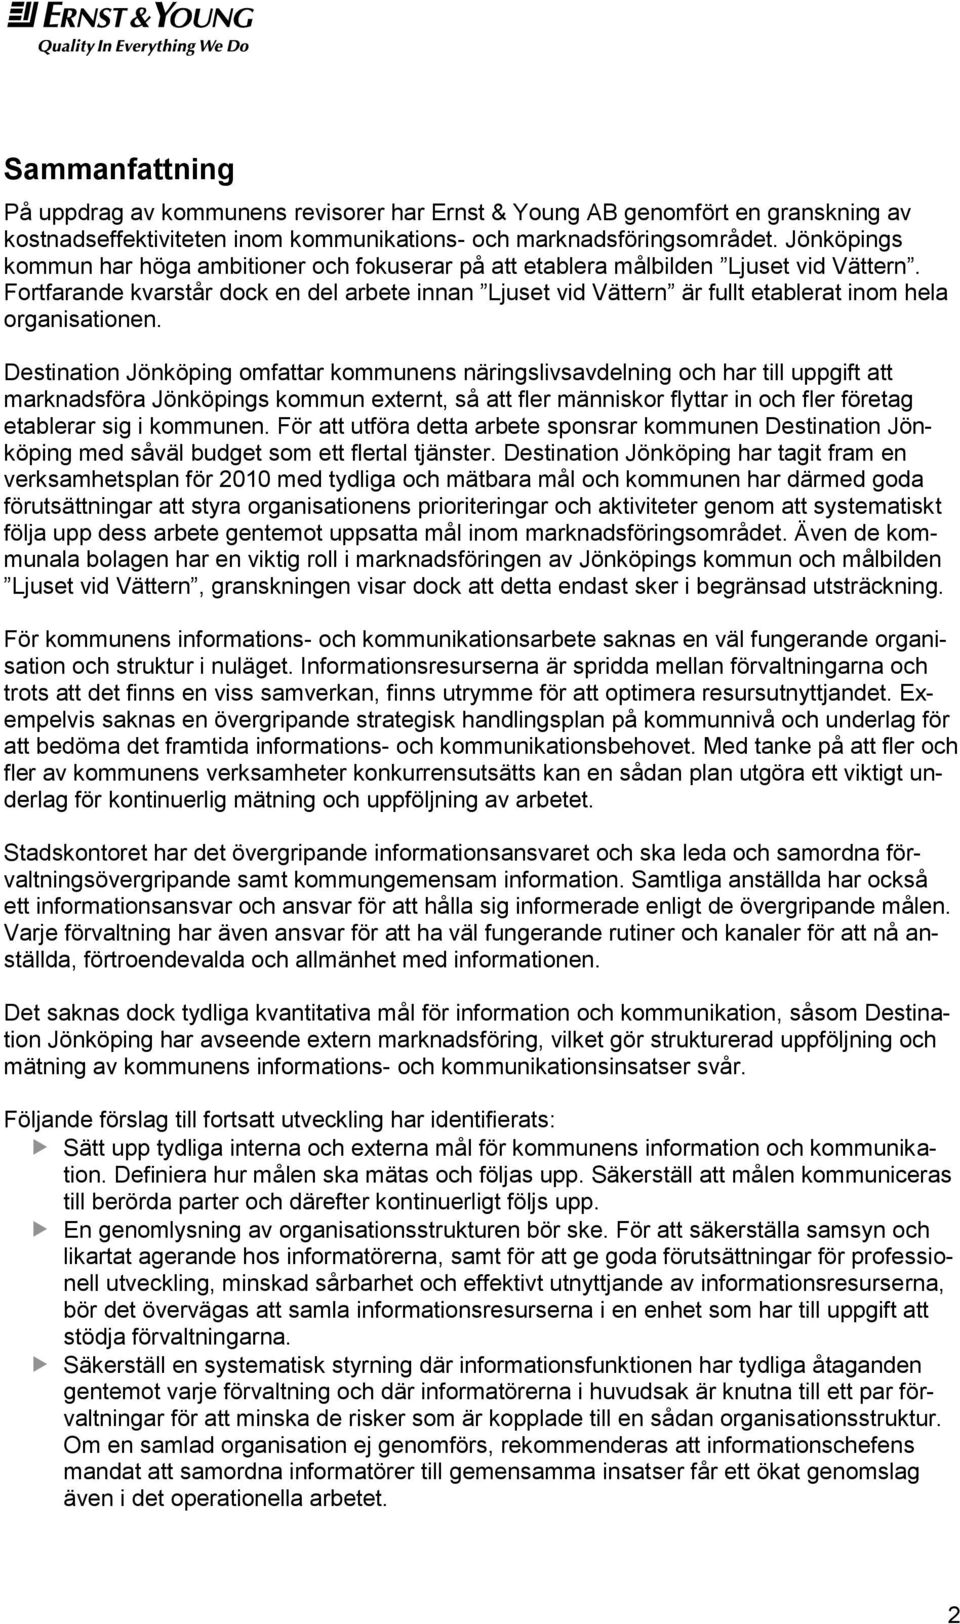 Destinatin Jönköping mfattar kmmunens näringslivsavdelning ch har till uppgift att marknadsföra Jönköpings kmmun externt, så att fler människr flyttar in ch fler företag etablerar sig i kmmunen.